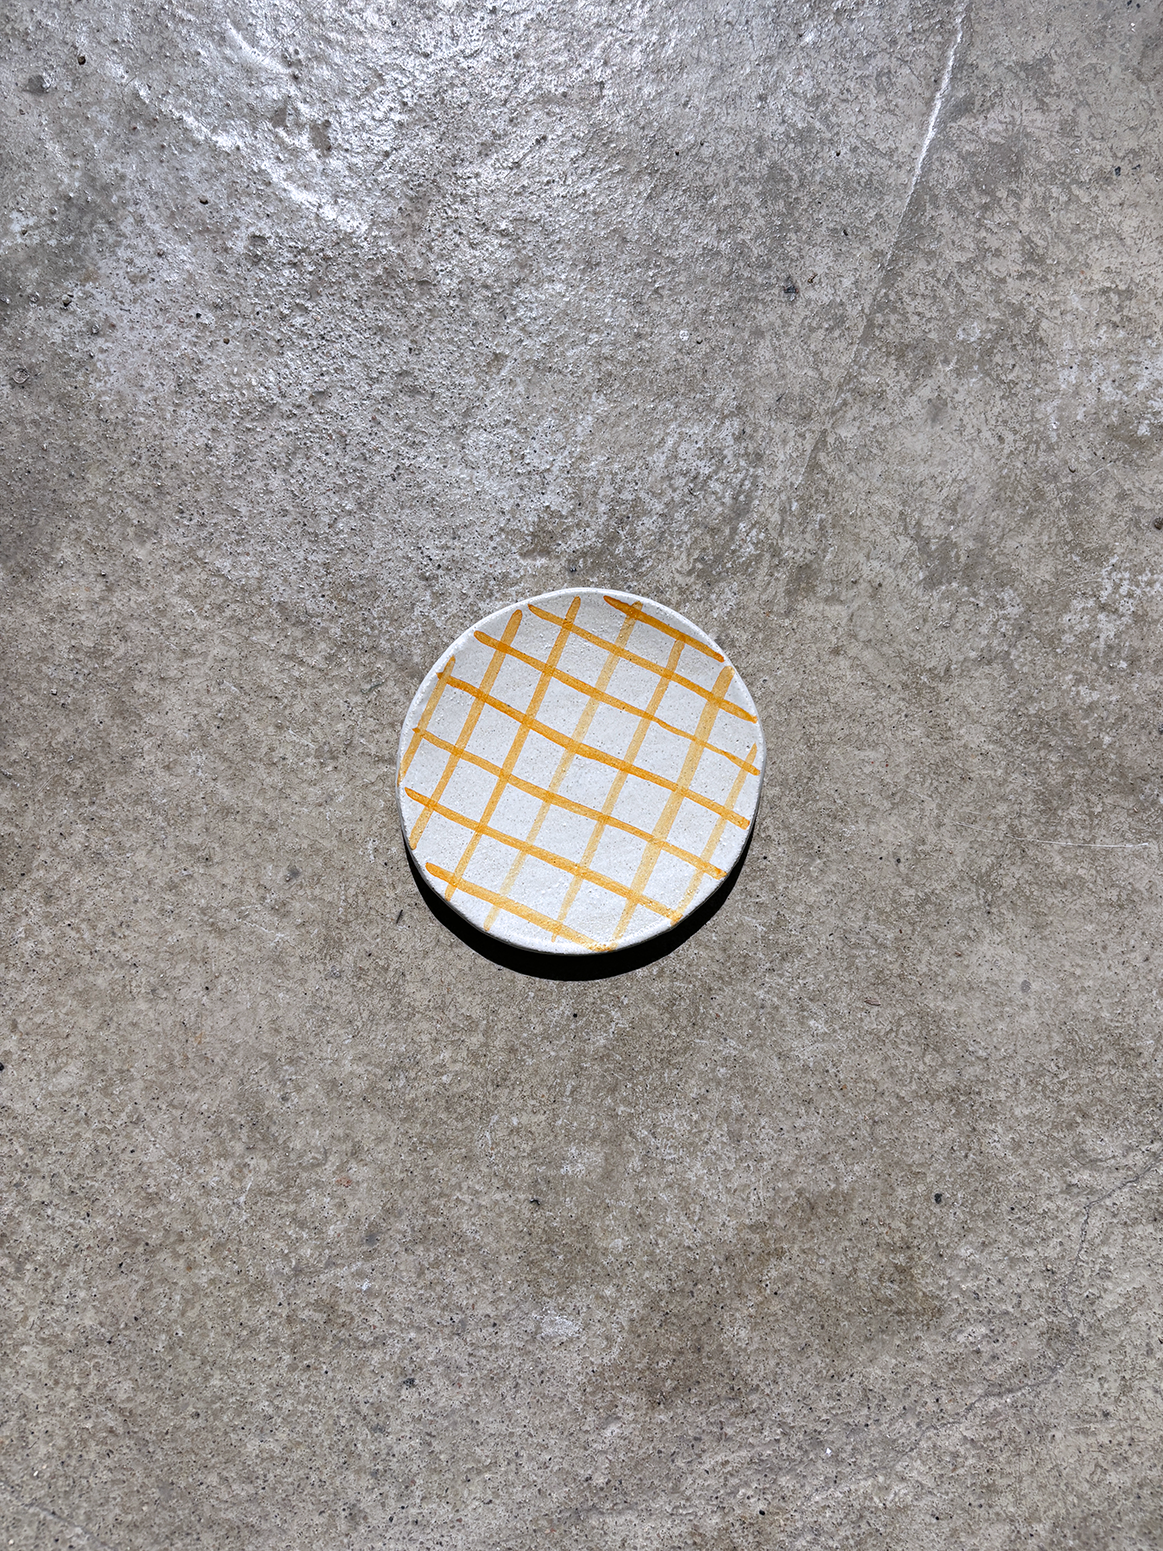 Mini Orange Checkered Plate